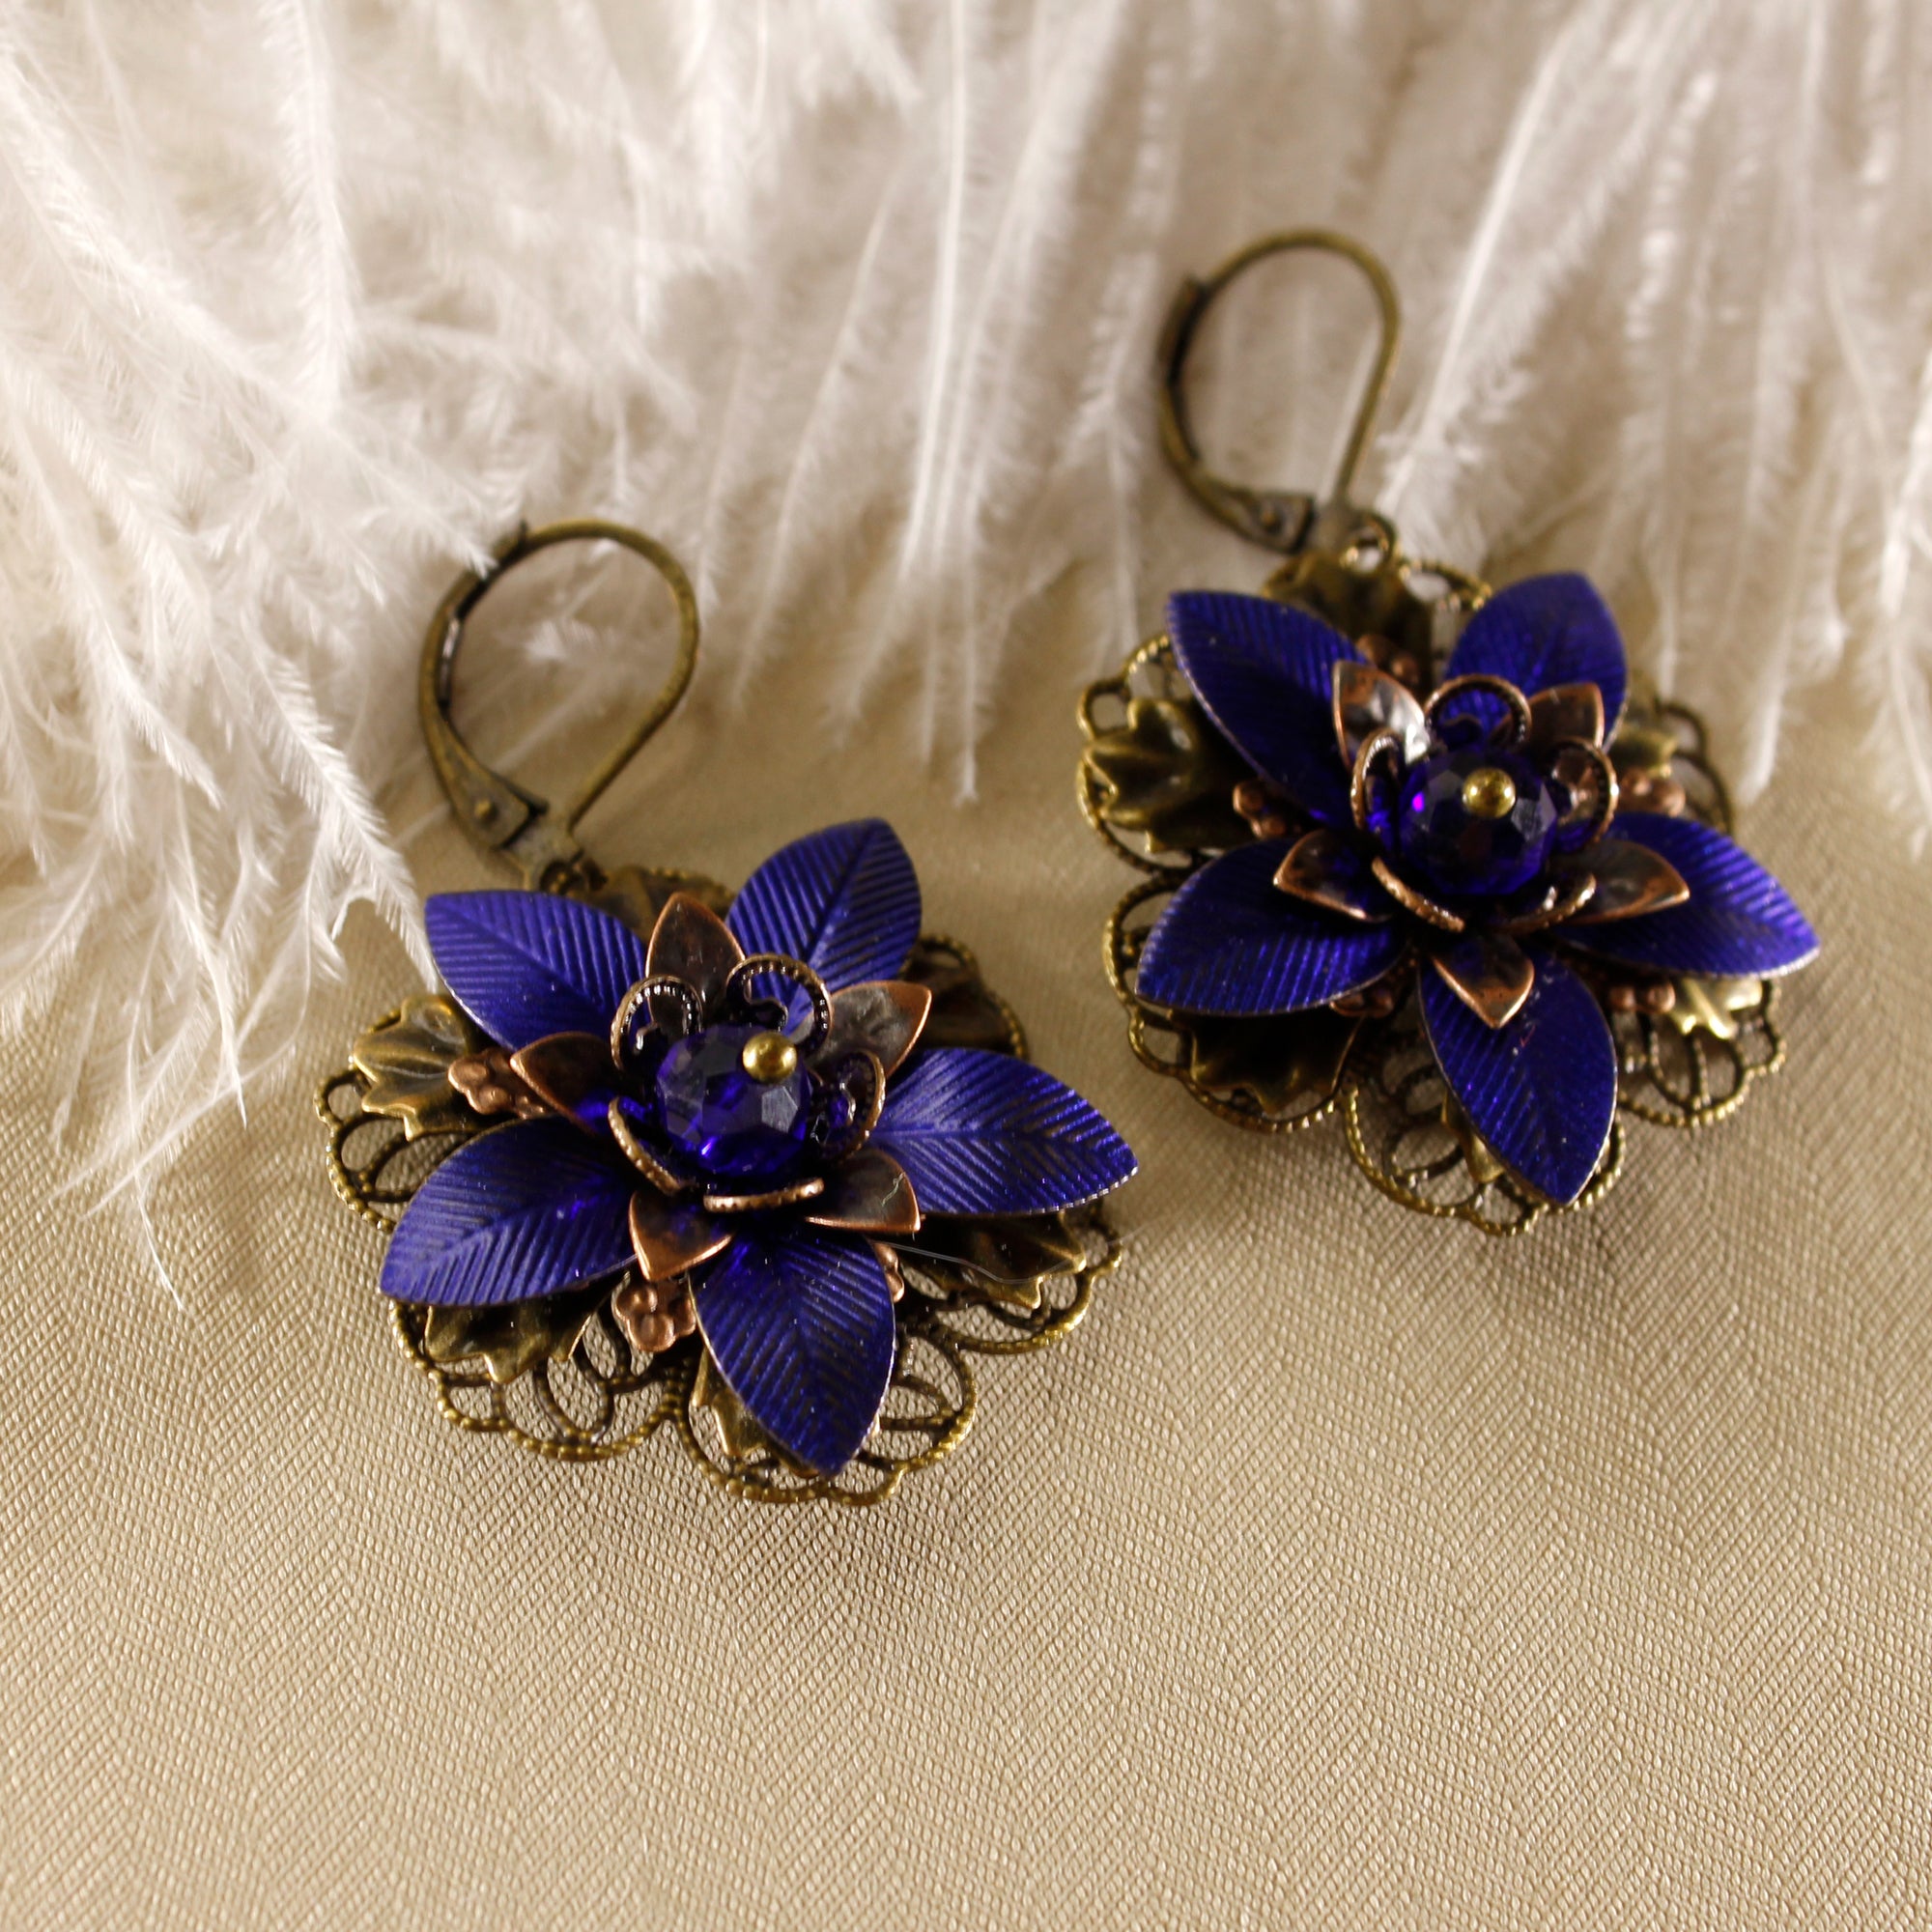 Vintage Style Earrings - Blue Flowers